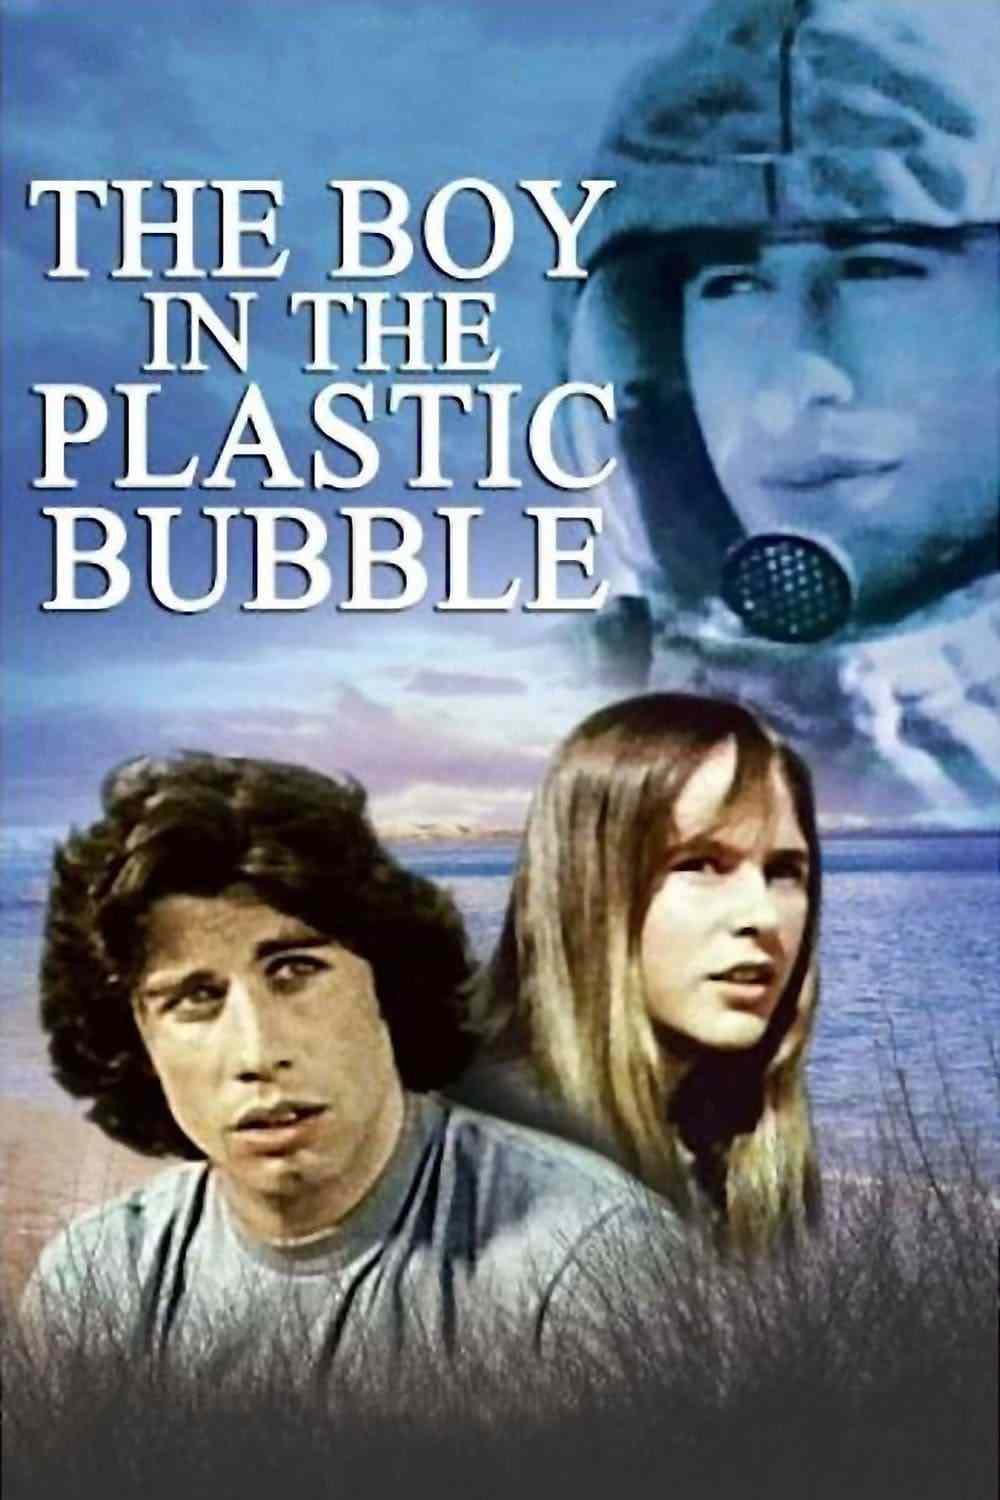 John Travolta - The Boy in the Plastic Bubble